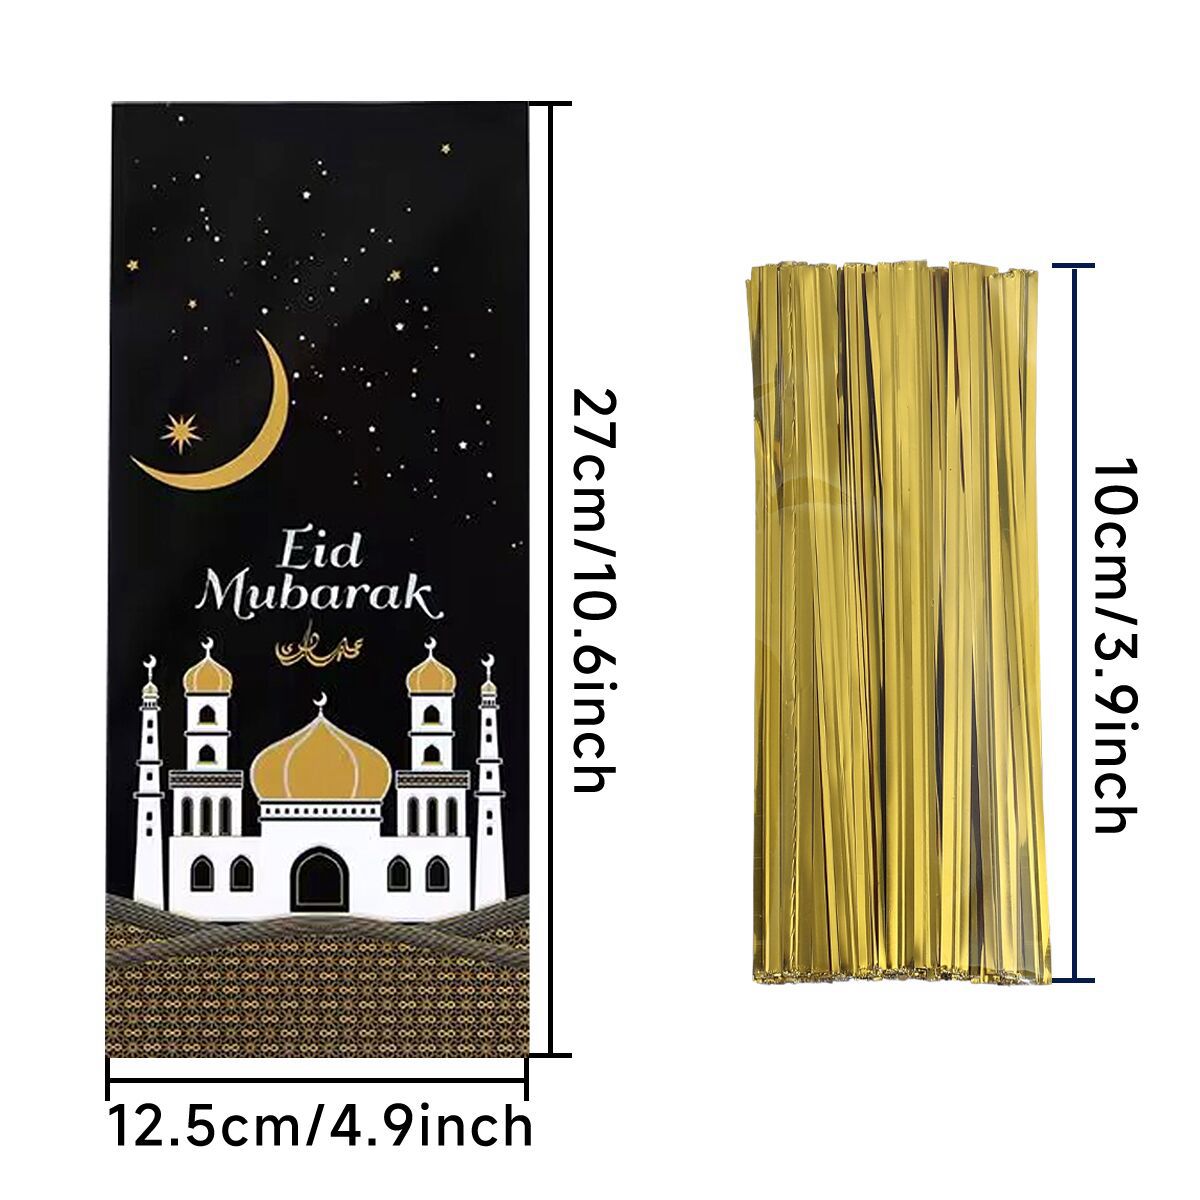 25/50pcs Eid Mubarak Gift Bags Plastic Cookie Candy Bag